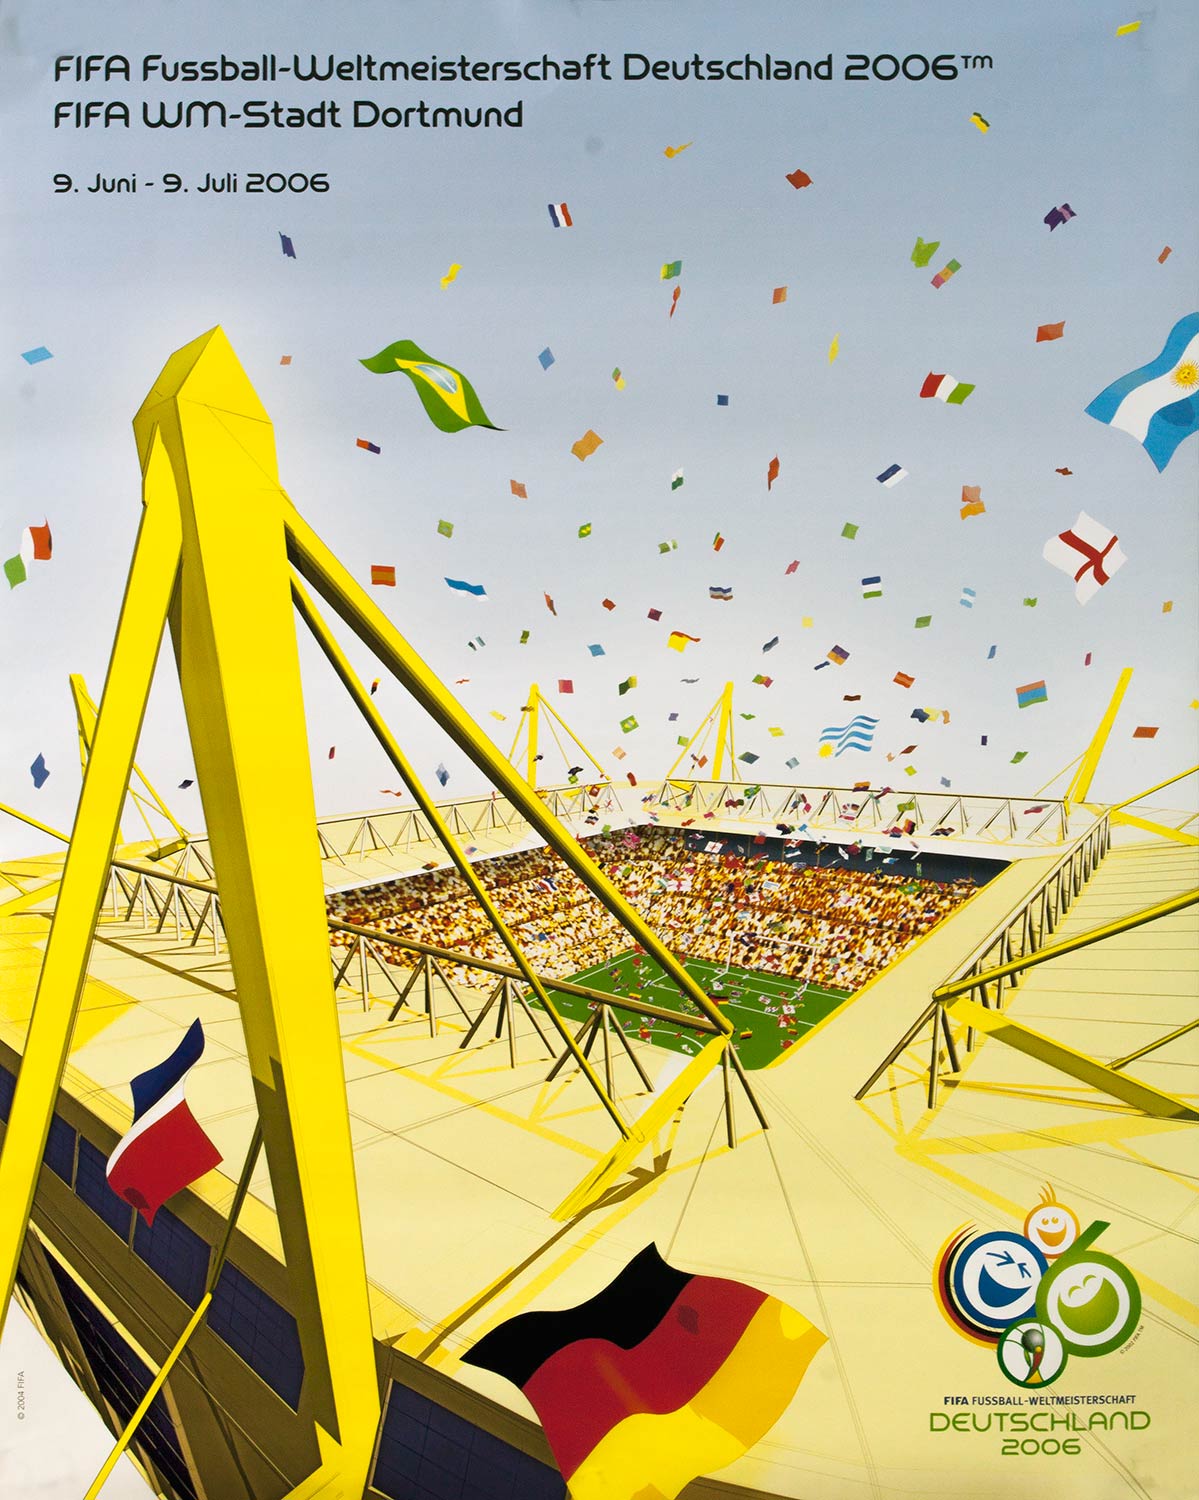 Plakat mit stilisierter Abbildung des Westfalenstadions mit den Flaggen der teilnehmenden Nationen